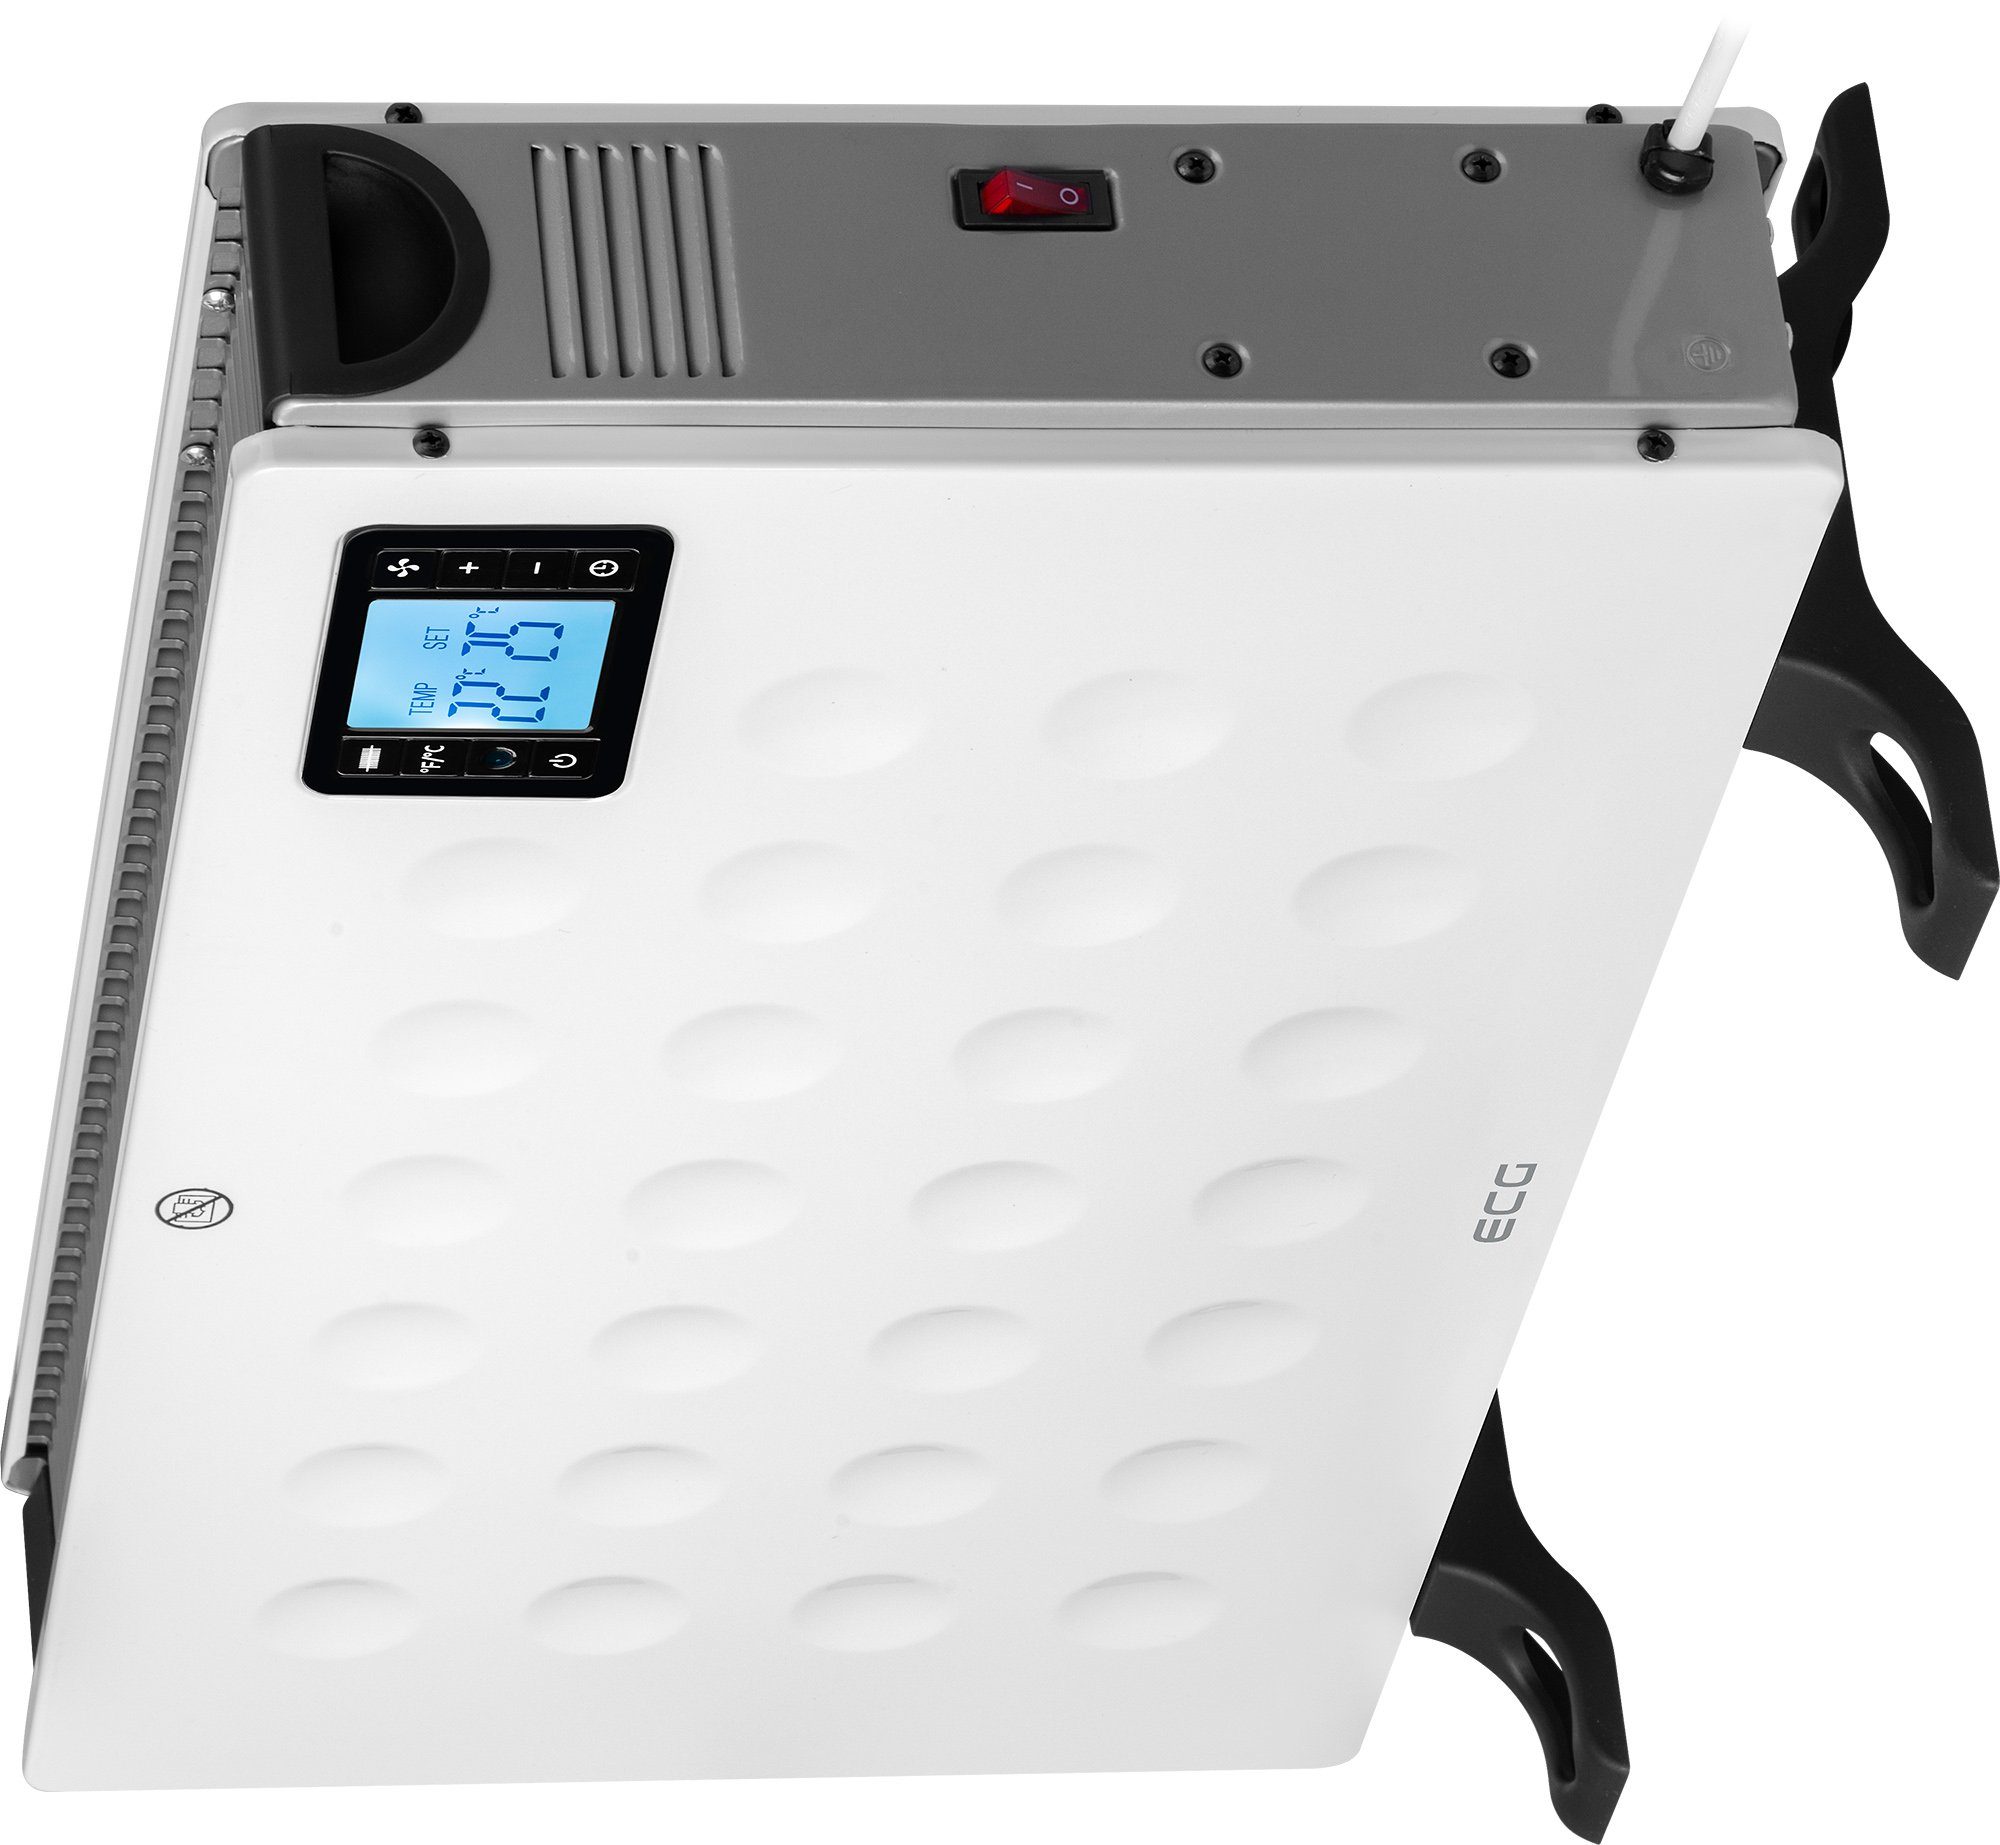 ECG Konvektor TK 2080 DR Ventilator 2000 White, regulierbarer W, Thermostat, Eingebauter Stufenlos